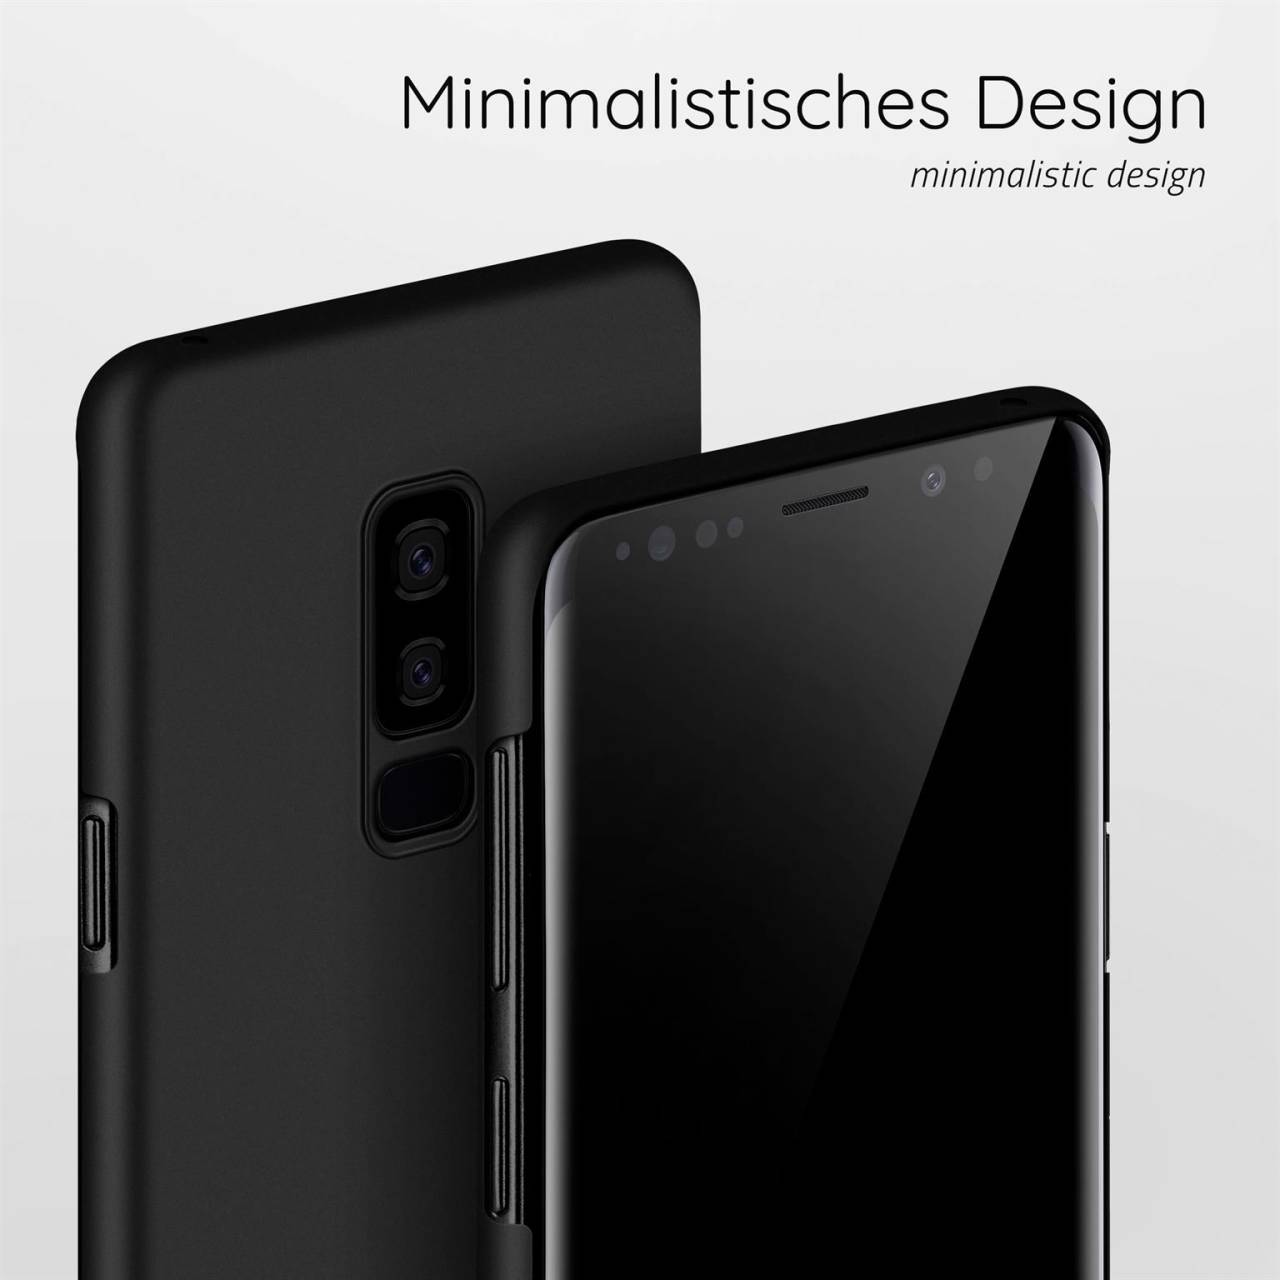 moex Alpha Case für Samsung Galaxy S9 Plus – Extrem dünne, minimalistische Hülle in seidenmatt